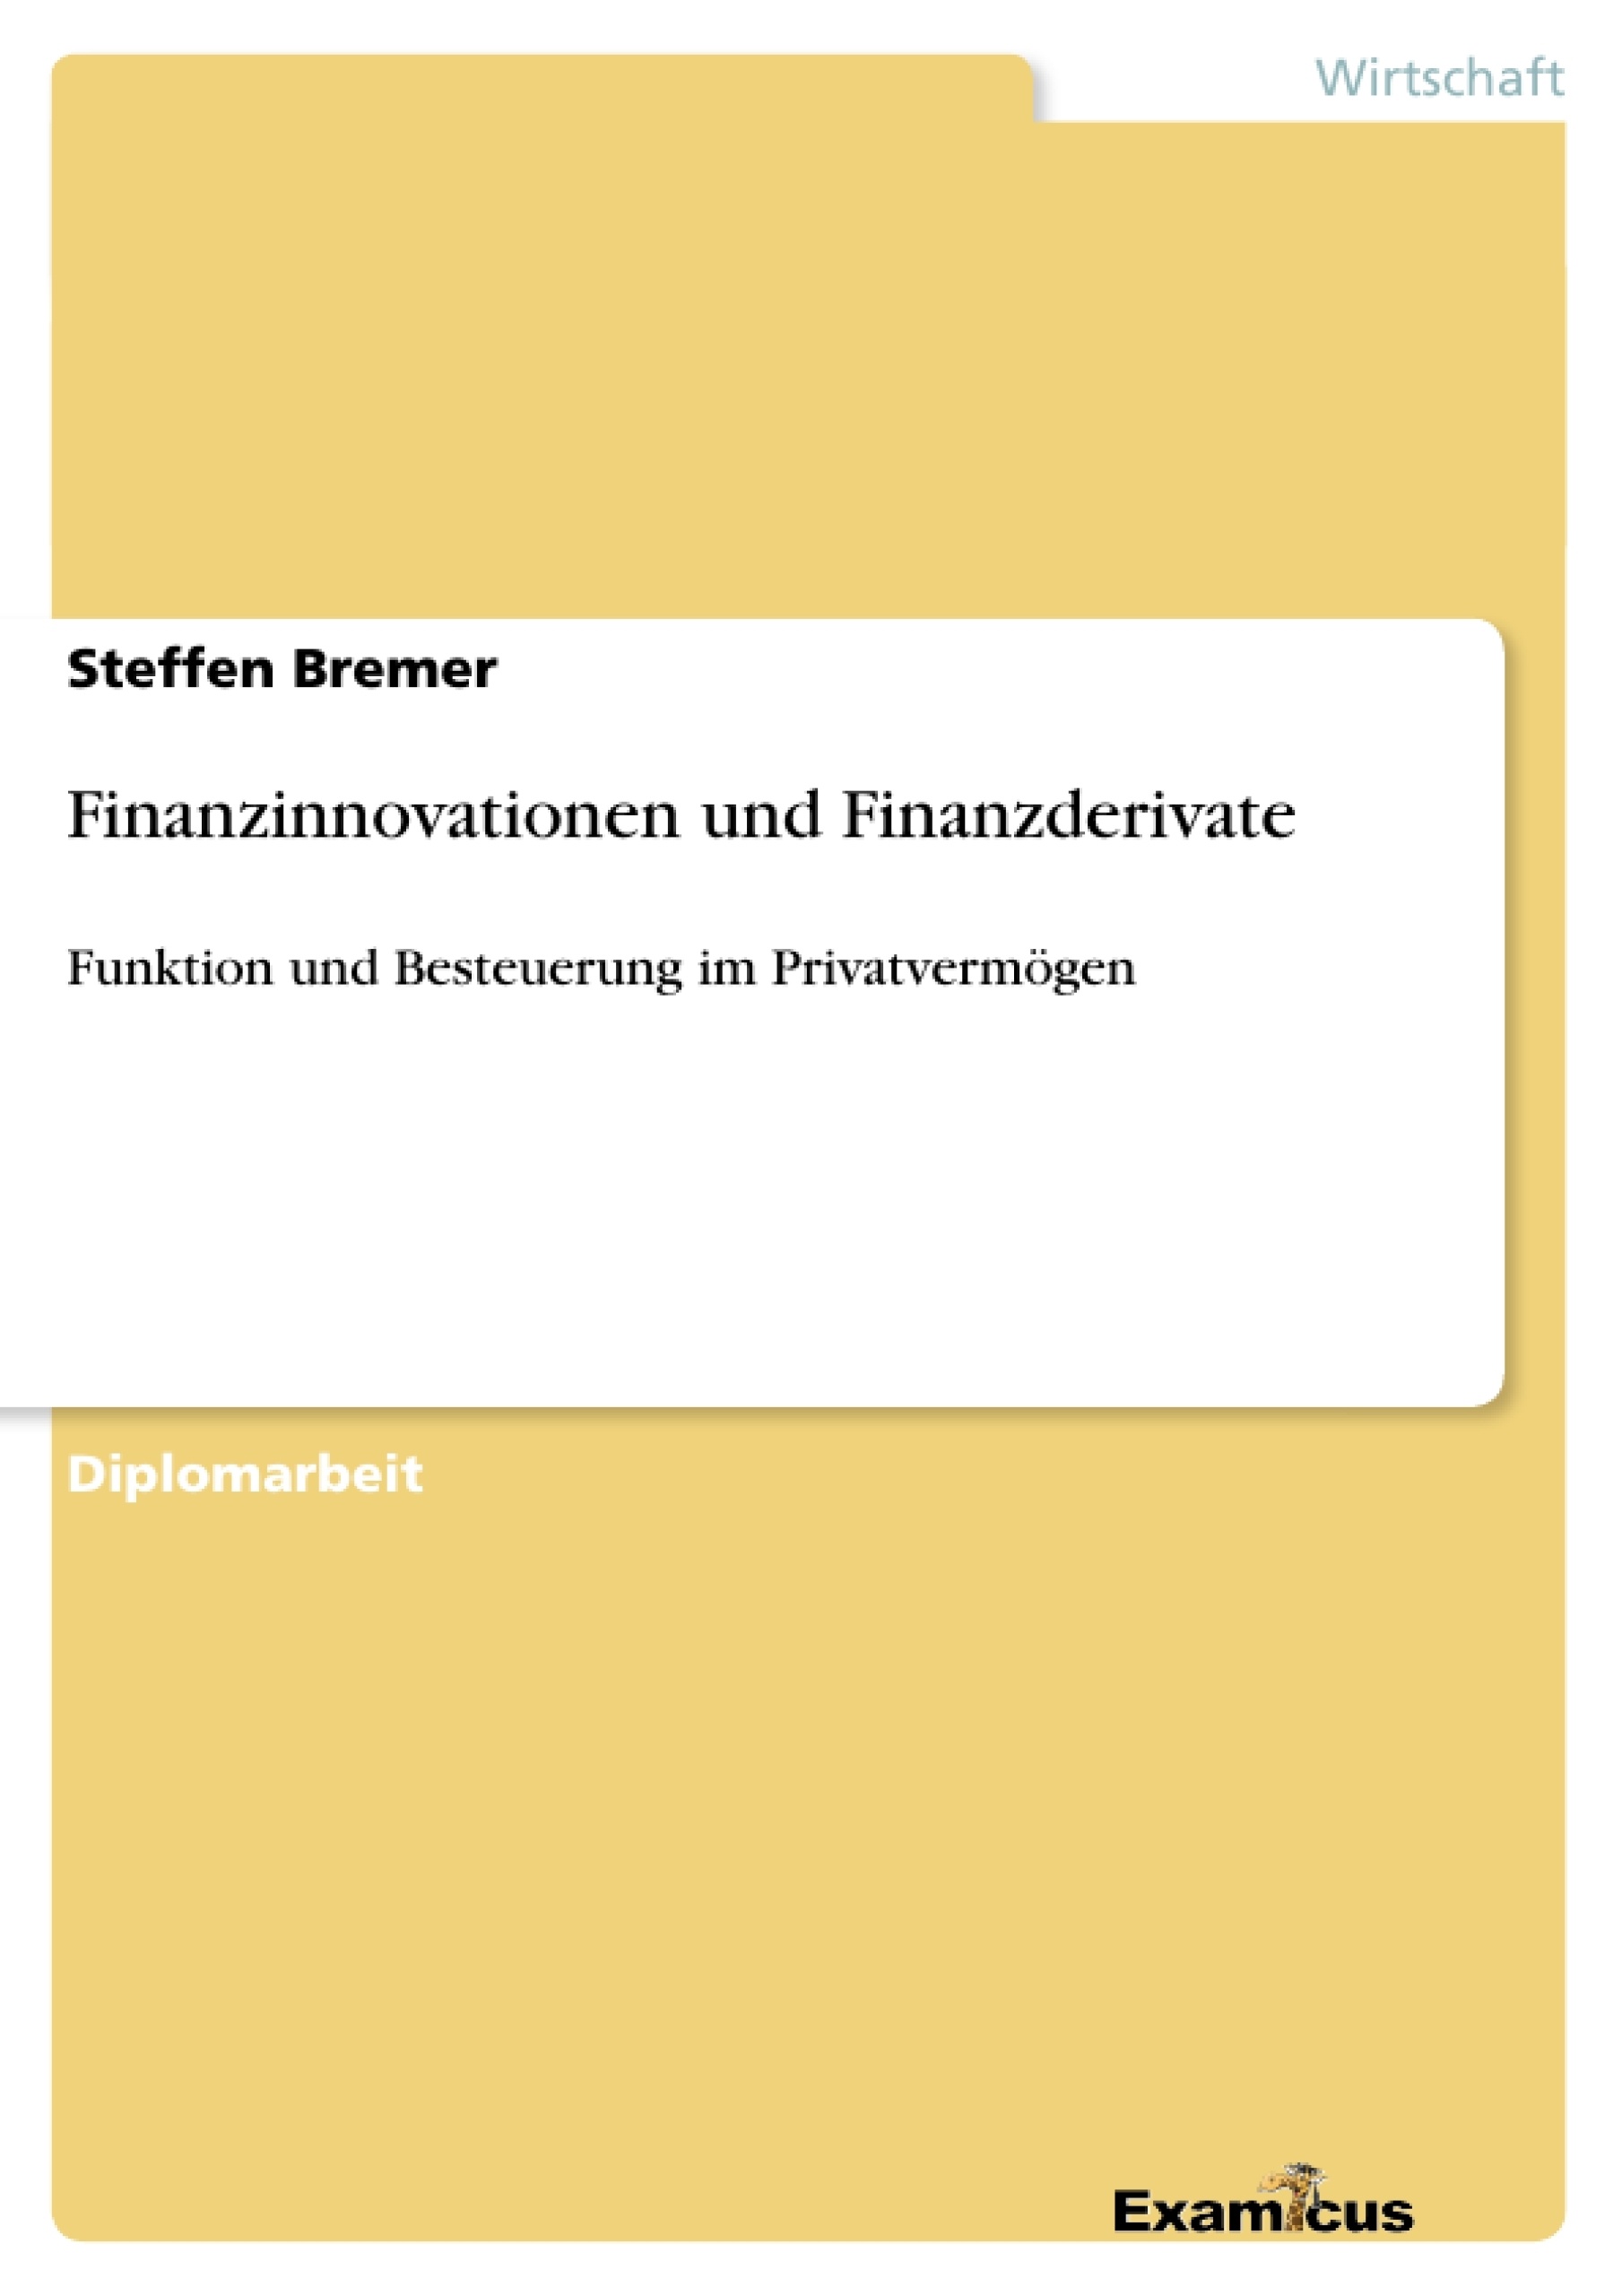 Title: Finanzinnovationen und Finanzderivate